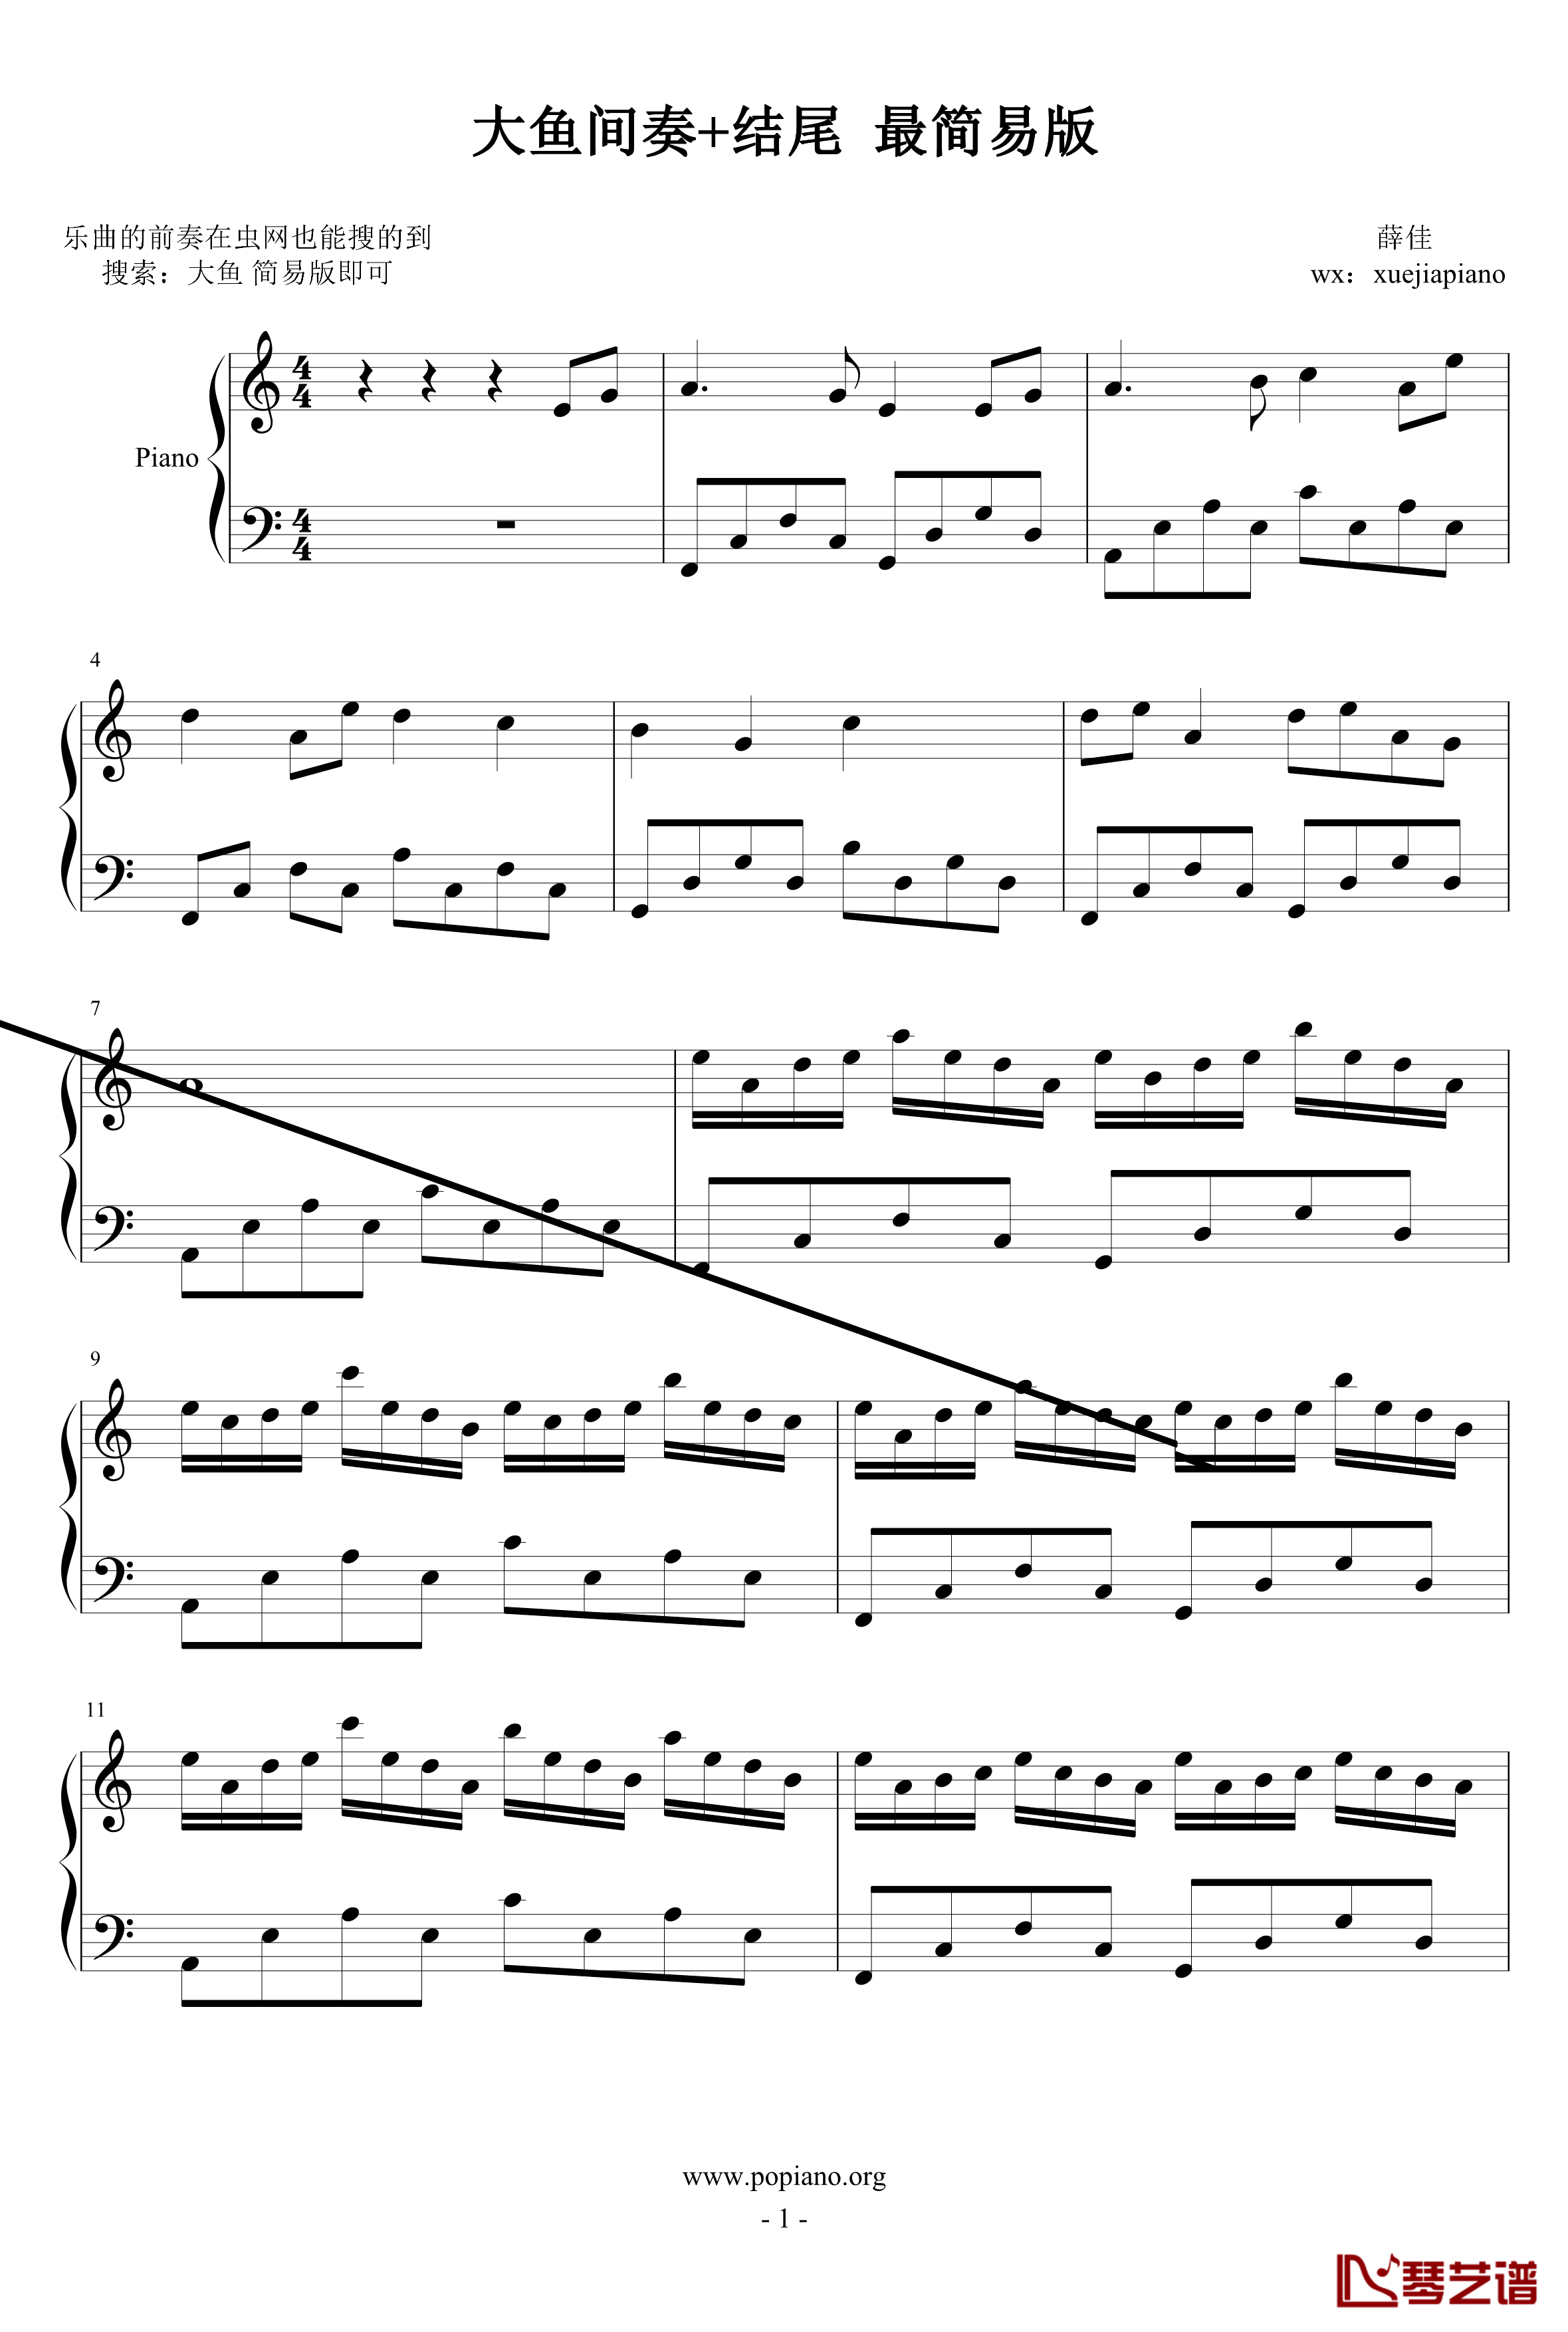 大鱼间奏钢琴谱-最简易版-大鱼海棠1